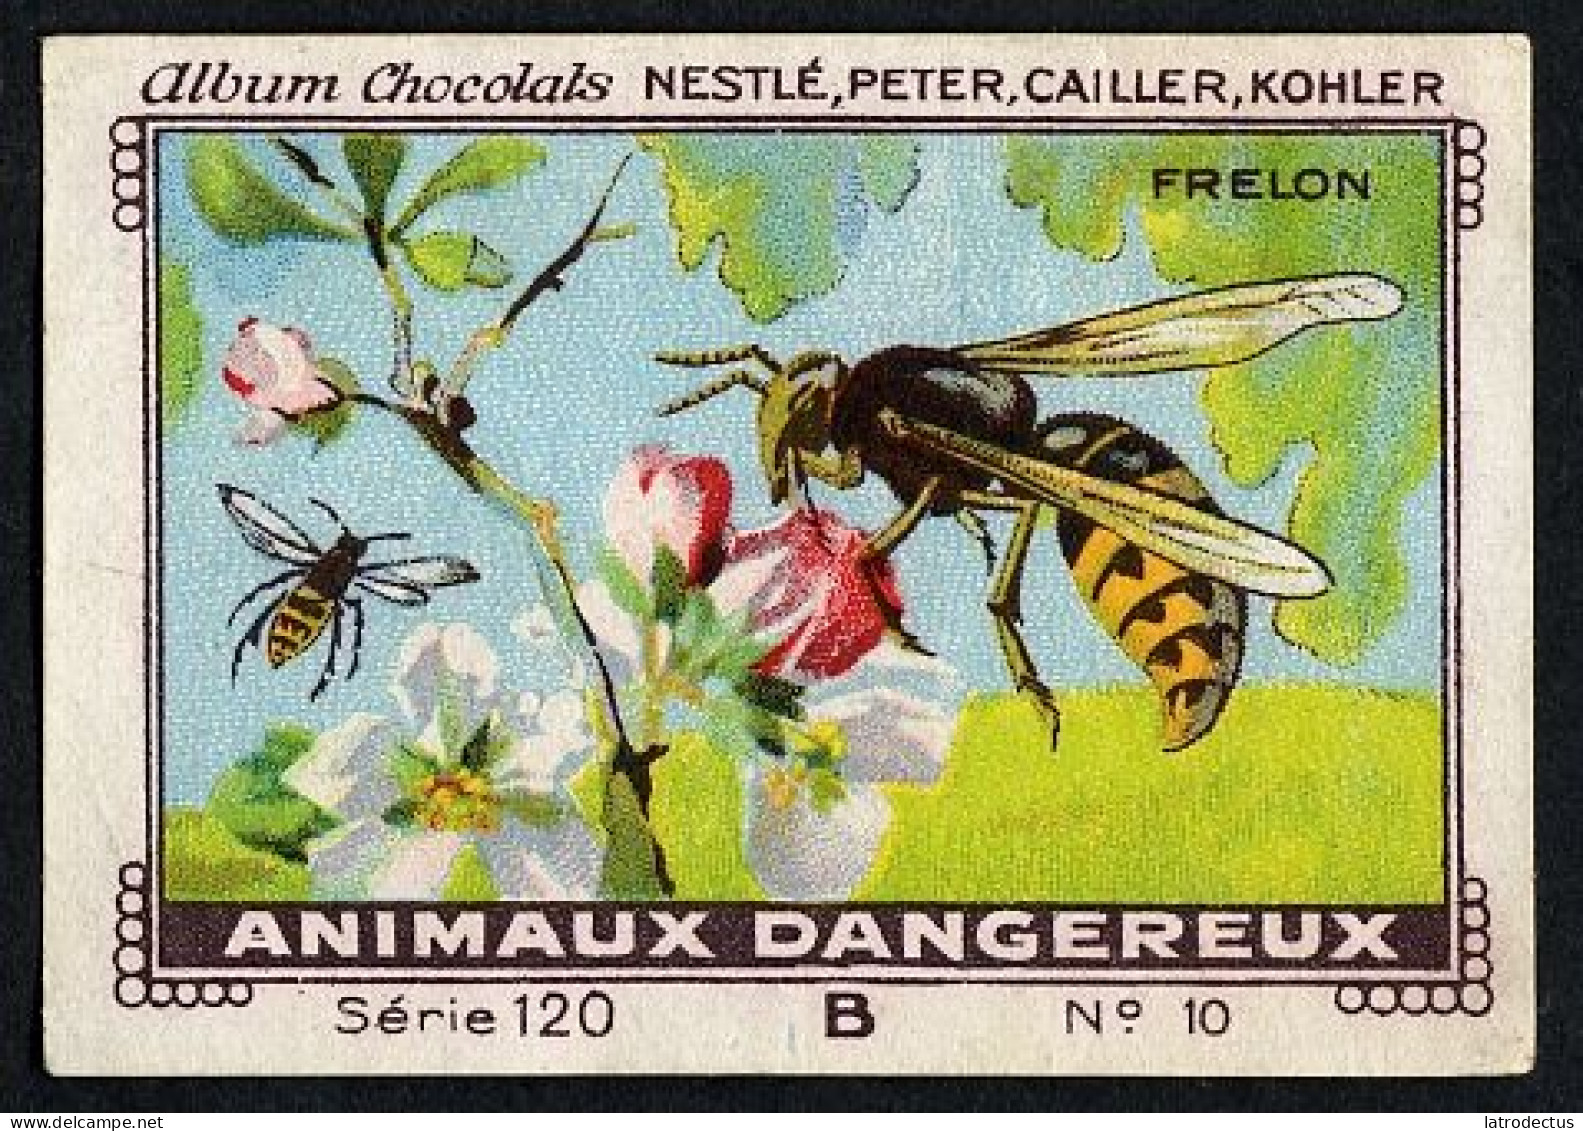 Nestlé - 120B - Animaux Dangereux, Dangerous Animals - 10 - Frelon - Nestlé